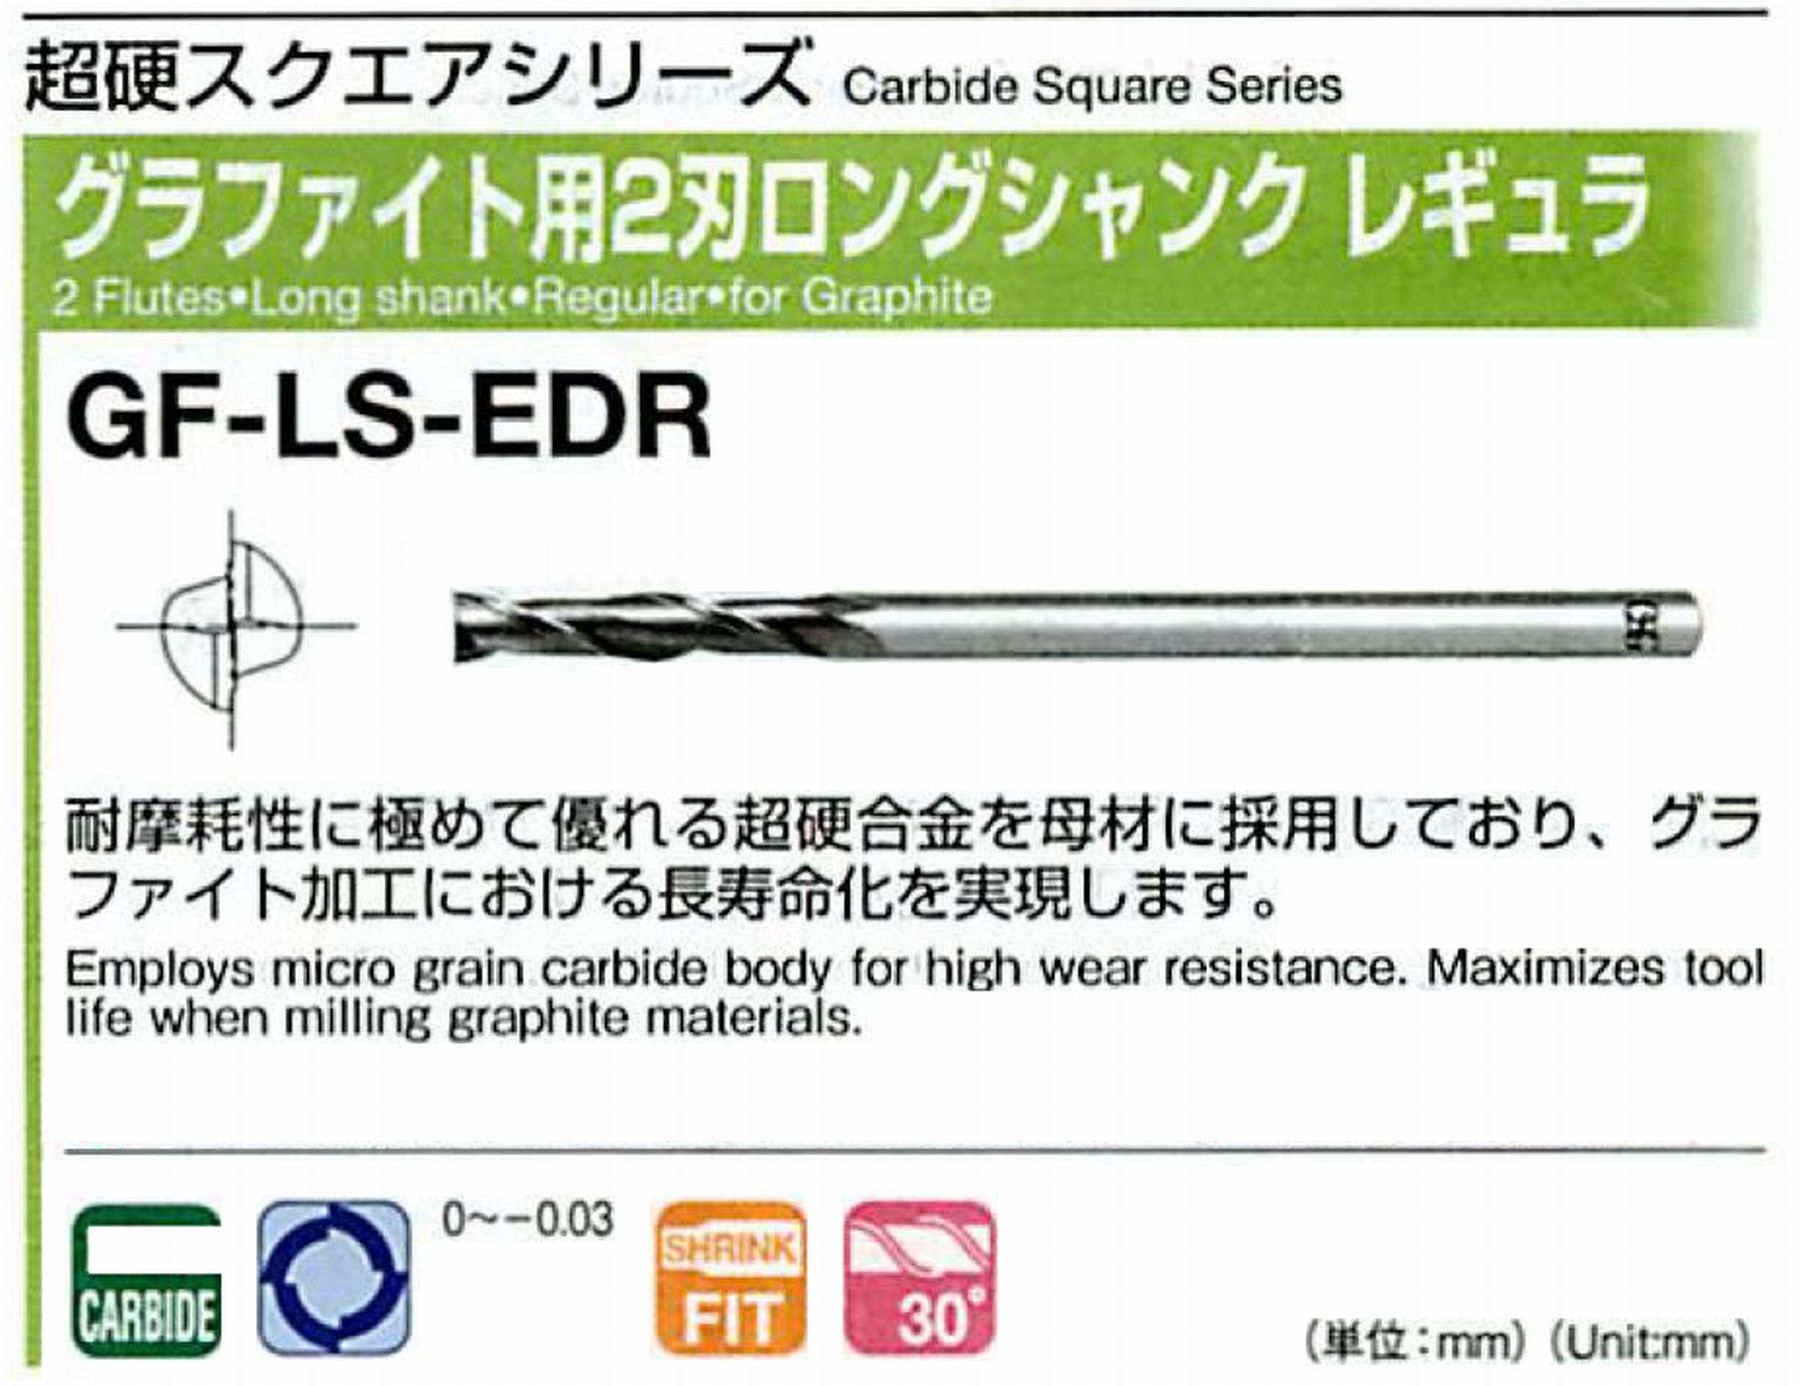 オーエスジー/OSG グラファイト用 2刃ロングシャンクレギュラ GF-LS-EDR 外径10 全長180 刃長50 シャンク径10mm 首下長120 首径9.7